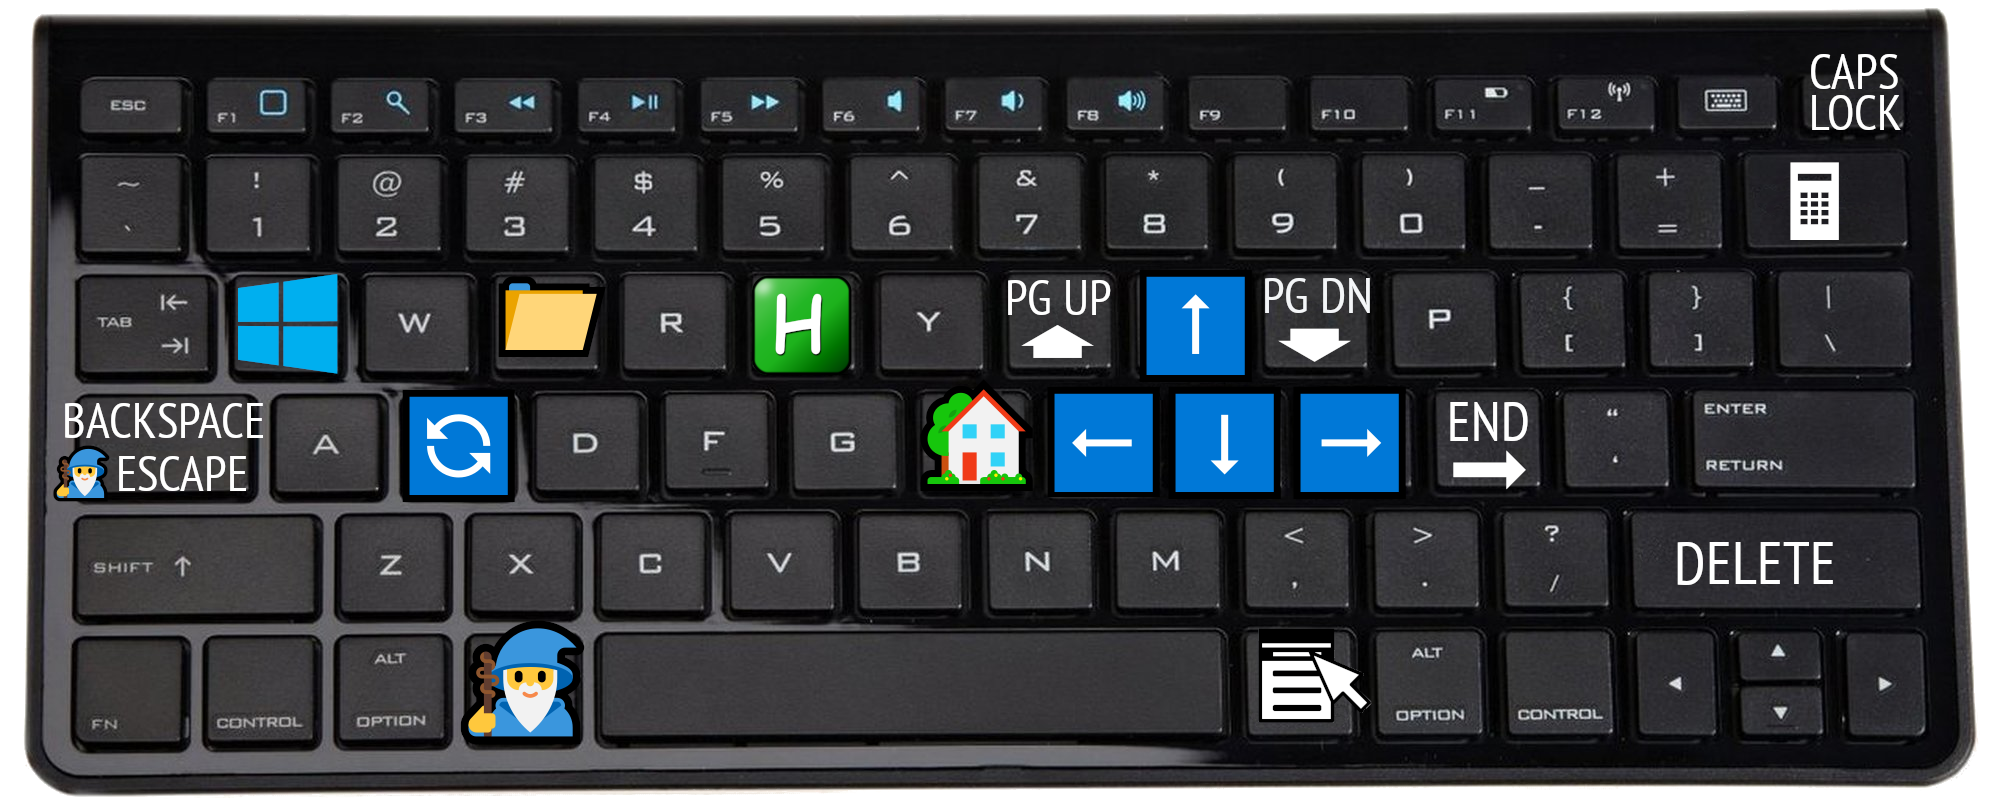 keyboard shortcuts made with AutoHotkey